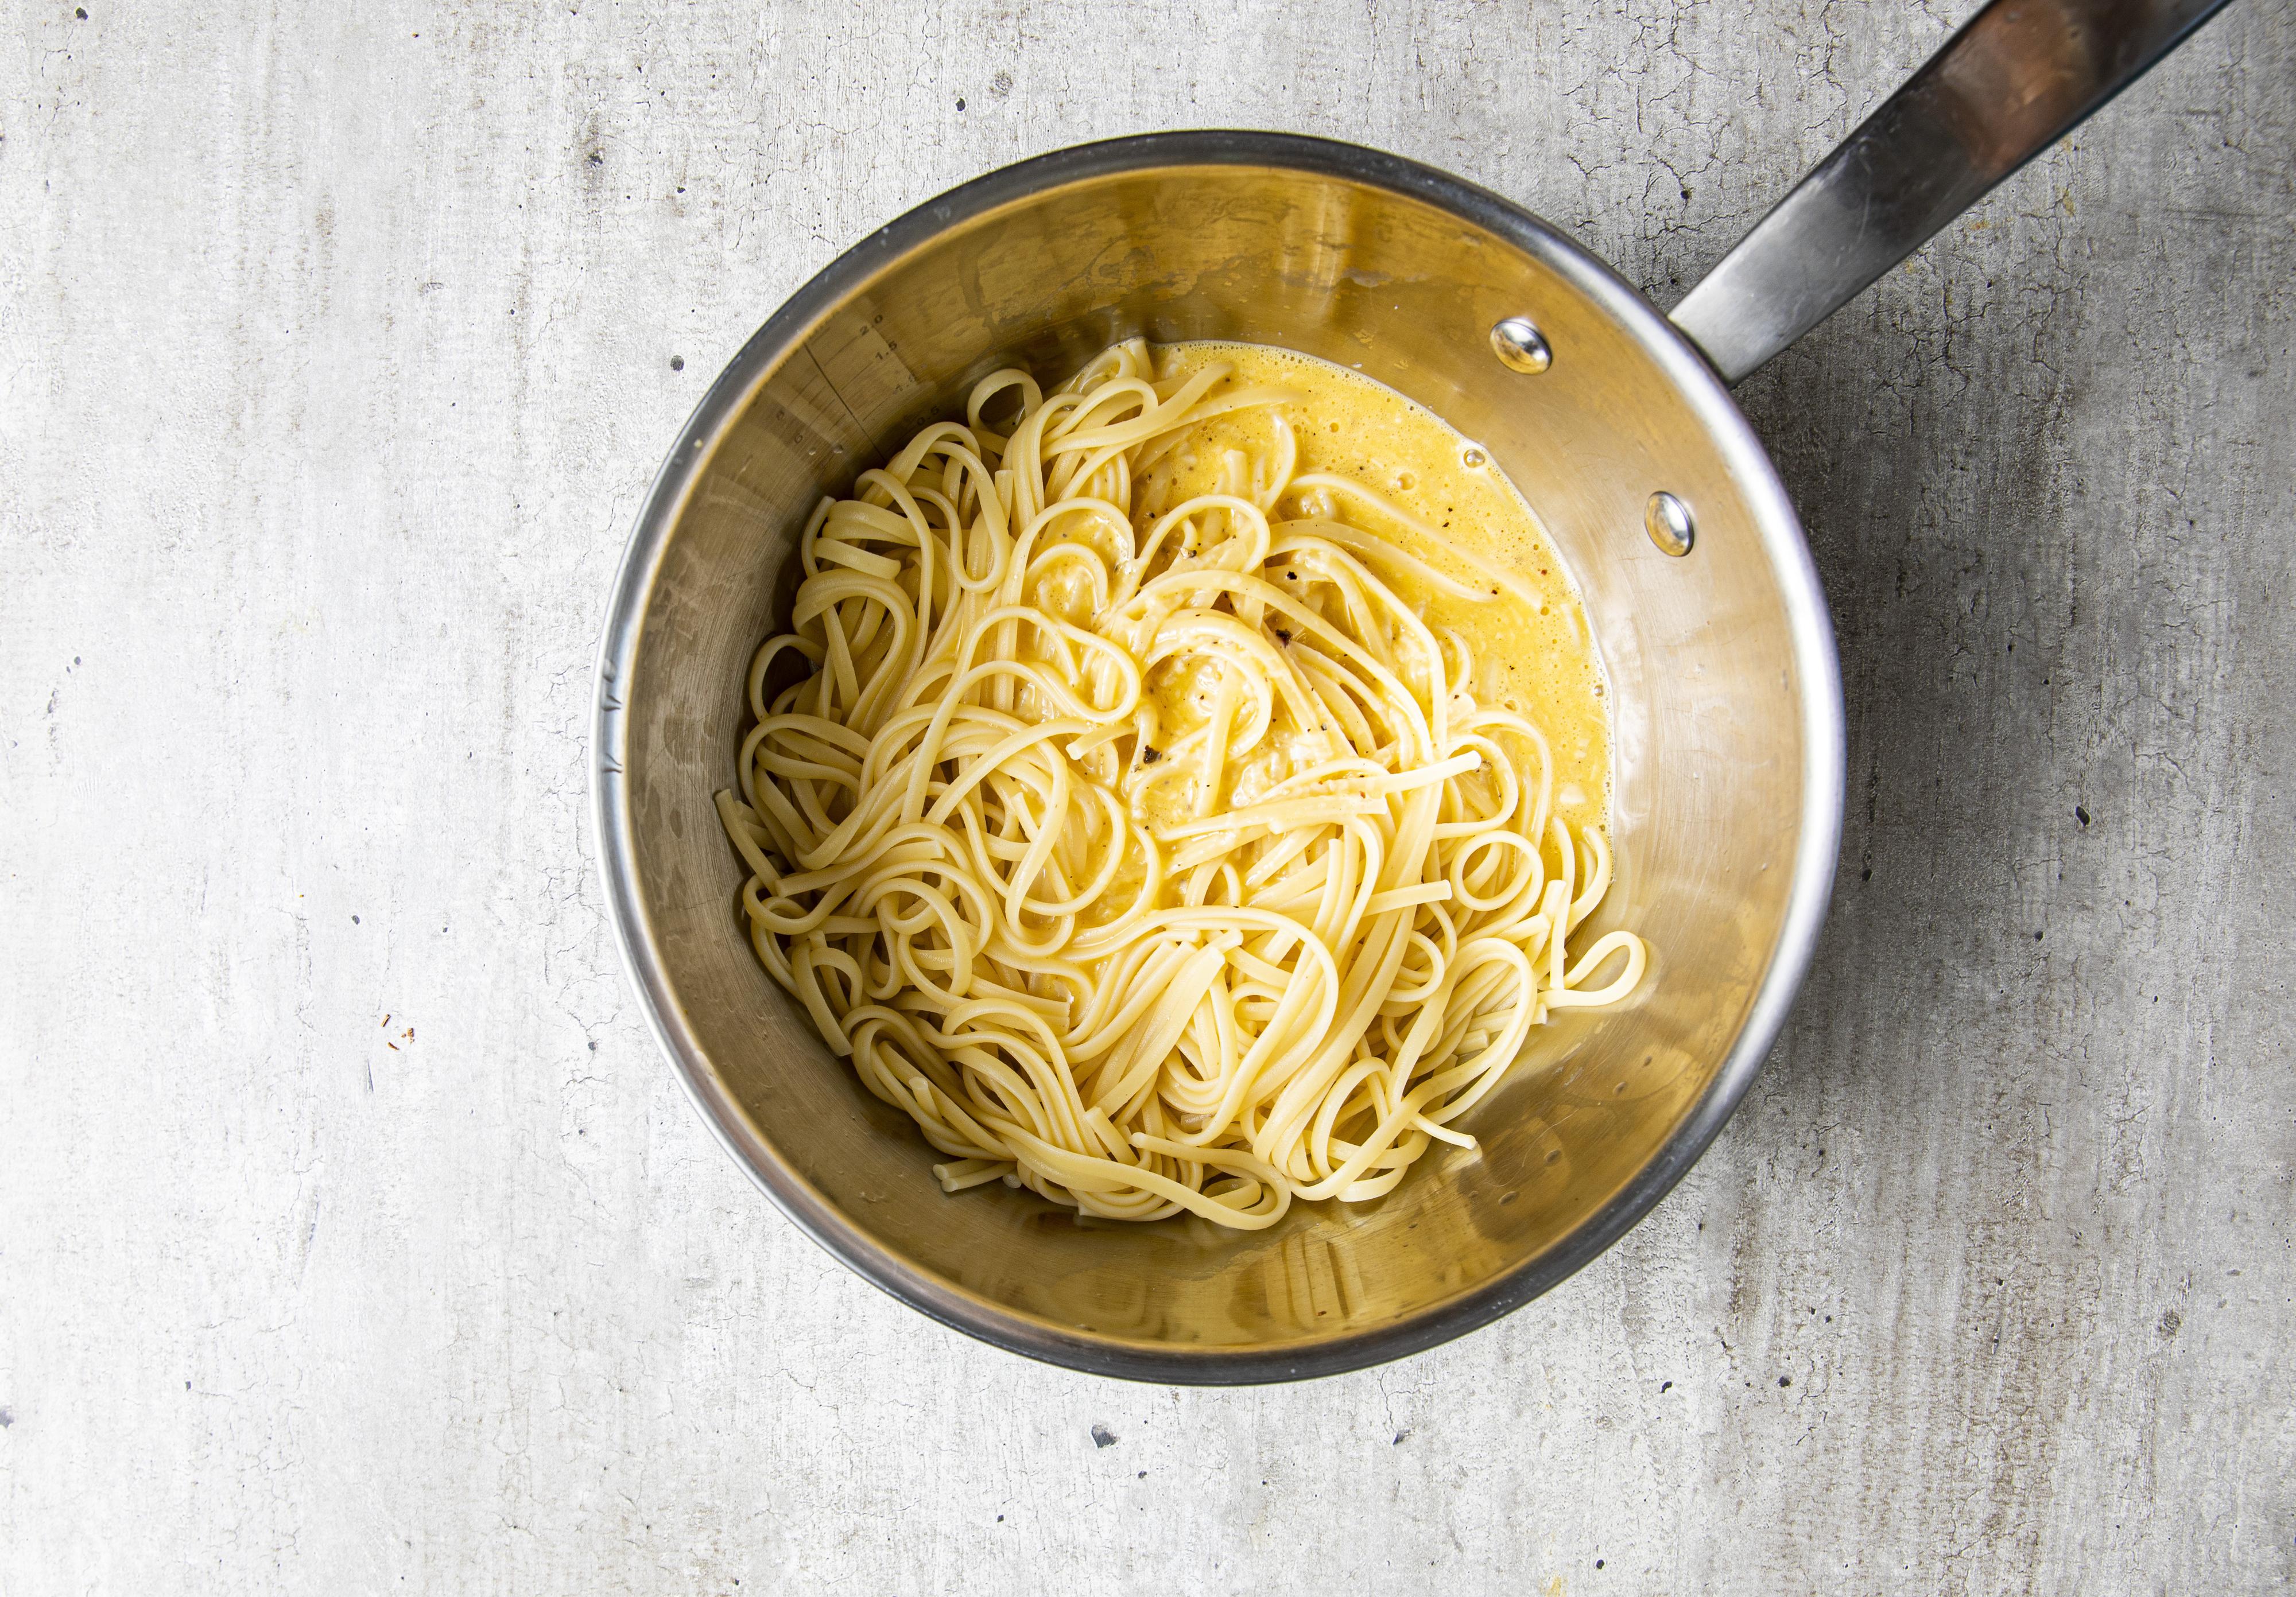 Ha eggeblandingen over i den varme nykokte pastaen. Spe med litt av kokevannet mens du hele tiden rører (eller svinger på kasserollen) til alt er godt blandet. Sausen skal bli saftig, glatt og glinsende (og absolutt ikke kornete). 